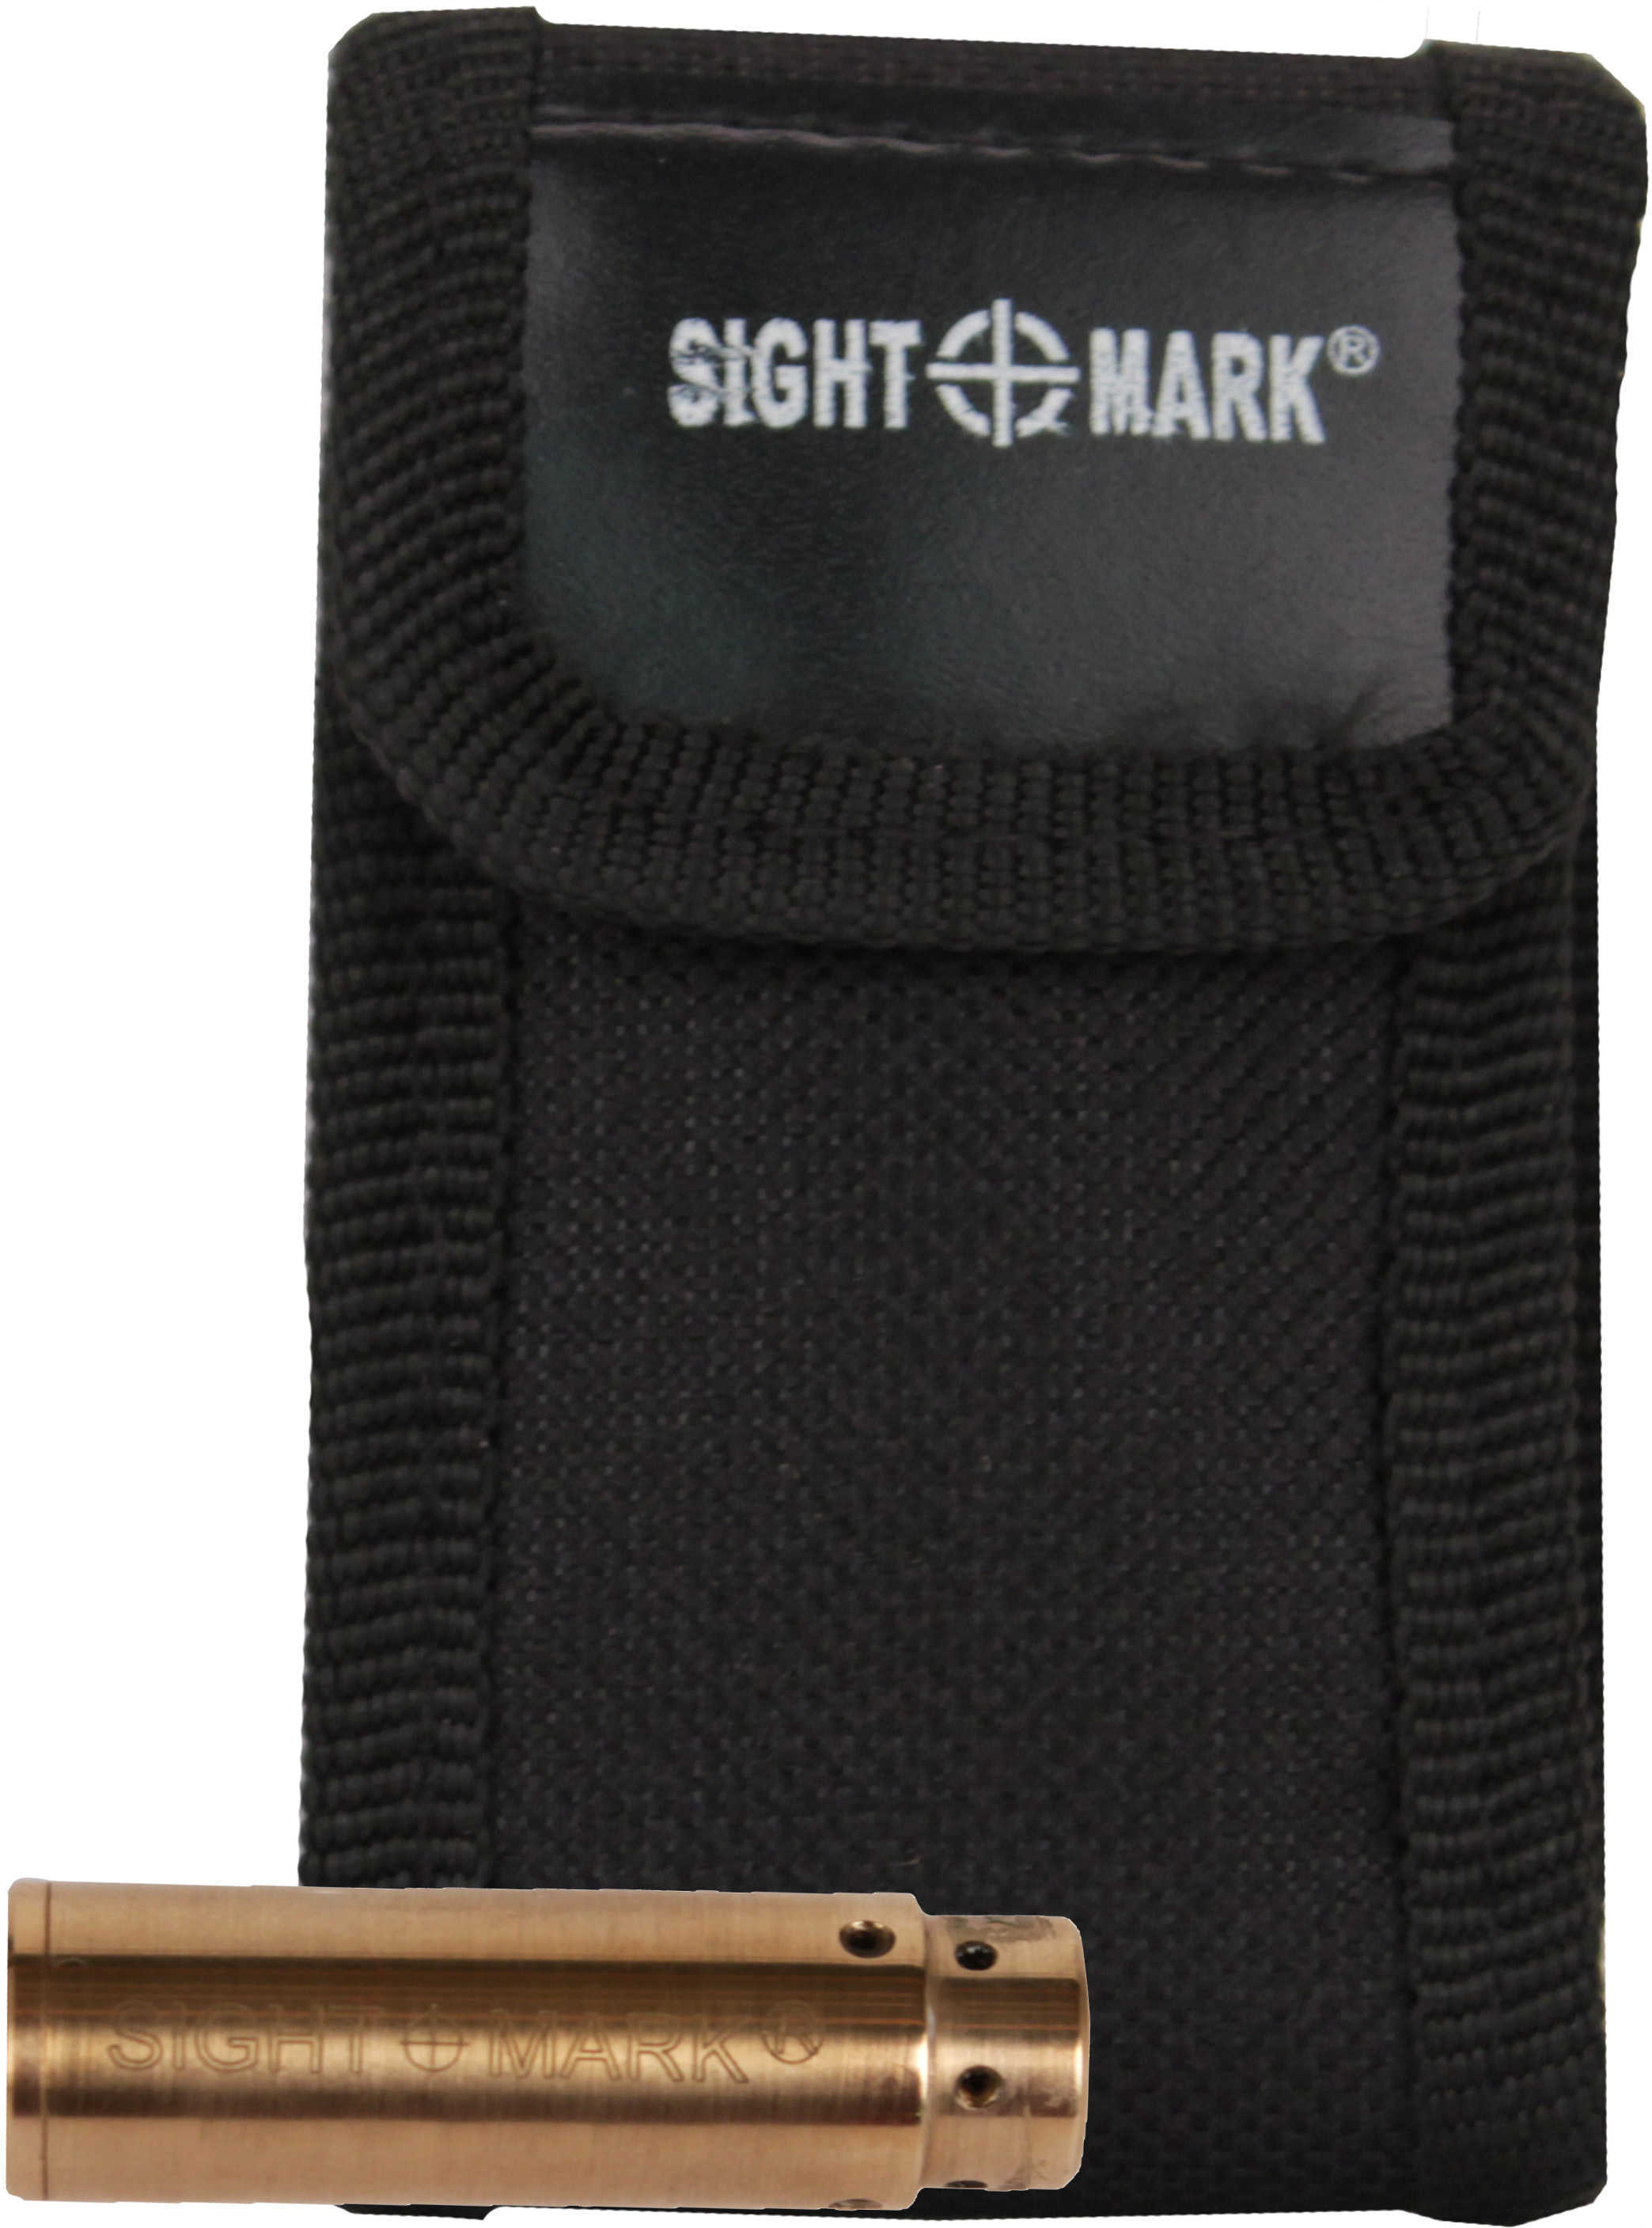 Sightmark .357/.38 Premium Laser Boresight